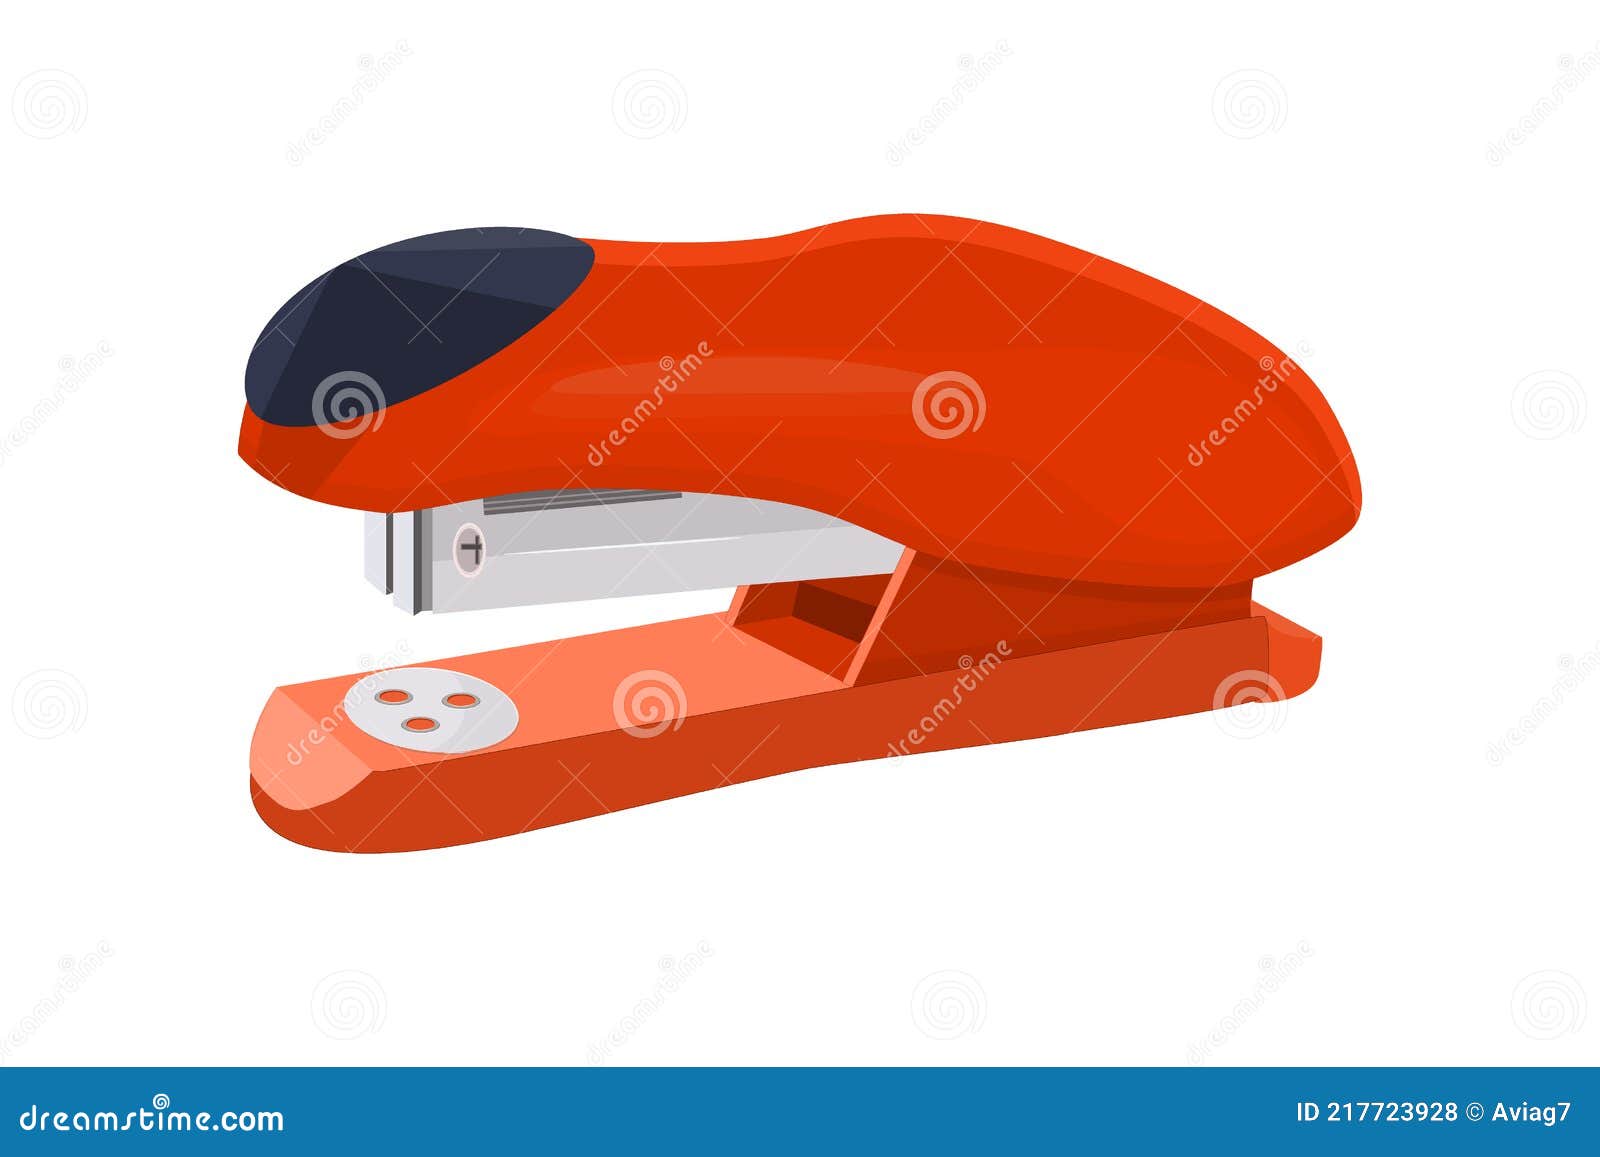 stapler  on white background. red office stapler for stapling paper.